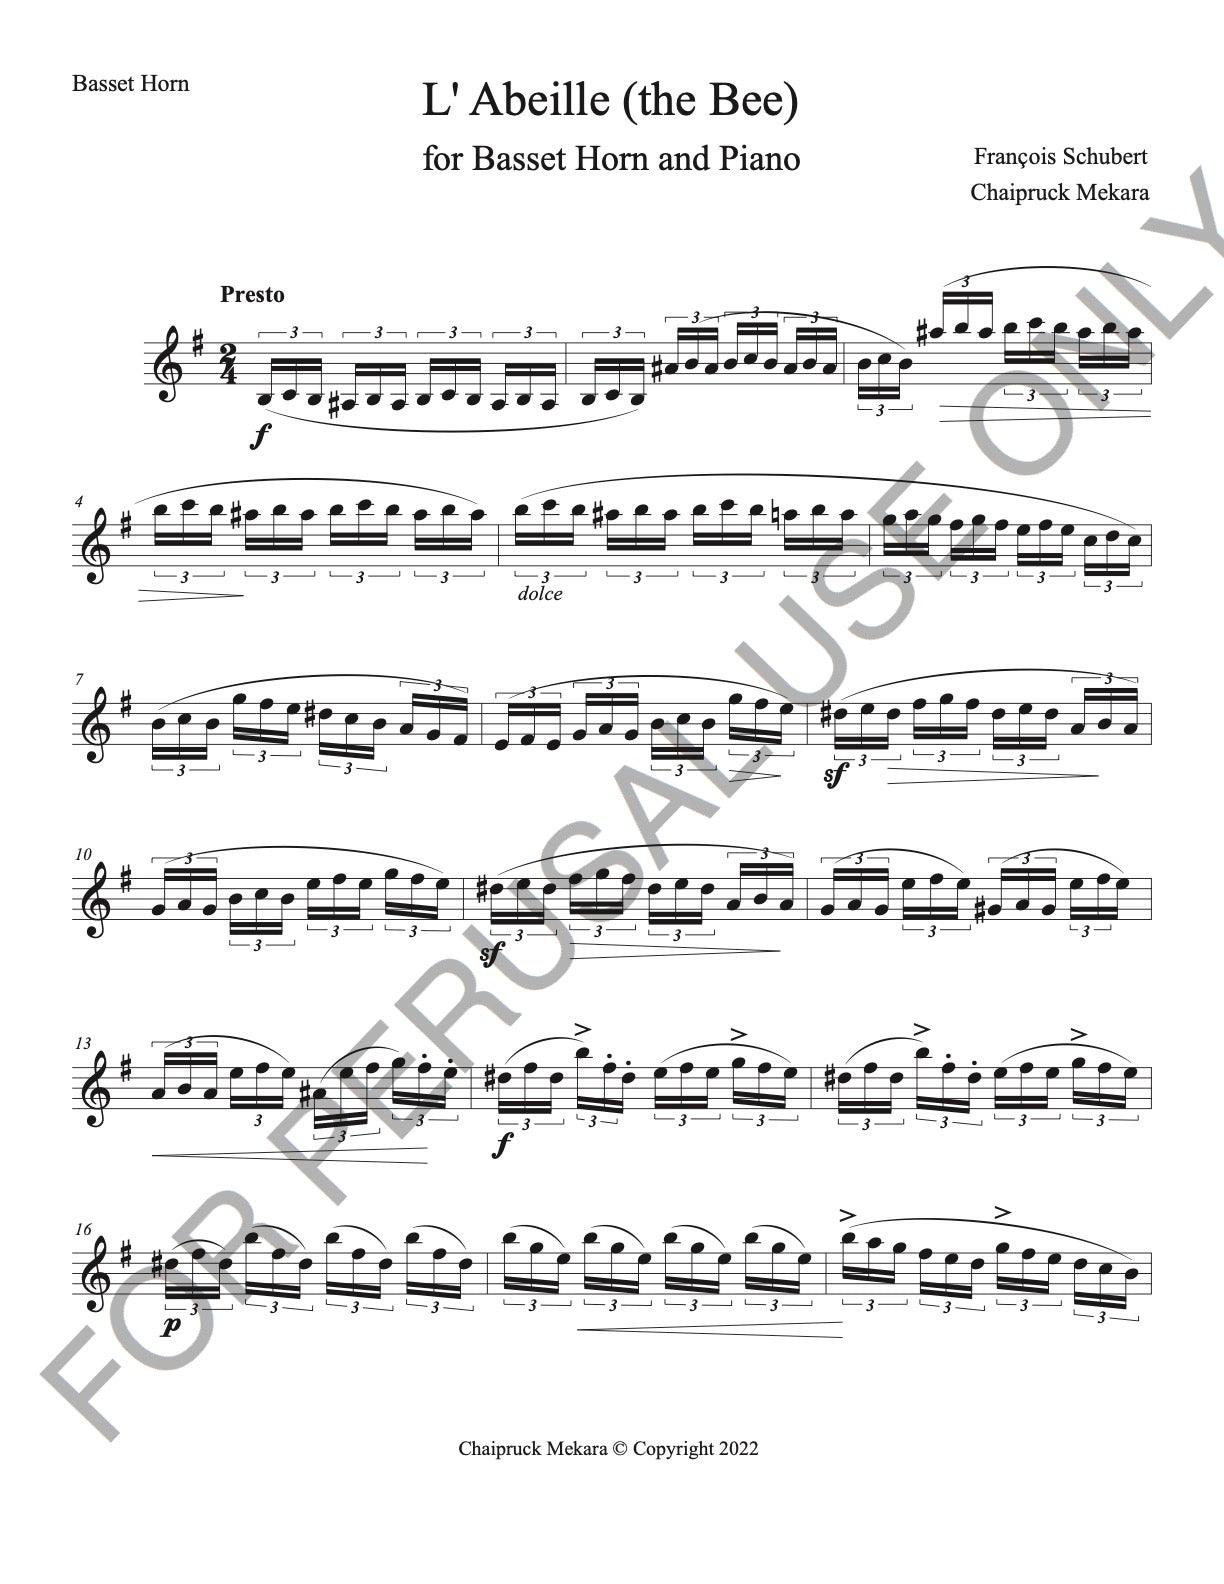 Basset Horn and Piano sheet music:Schubert's L'Abeille (The Bee) - ChaipruckMekara